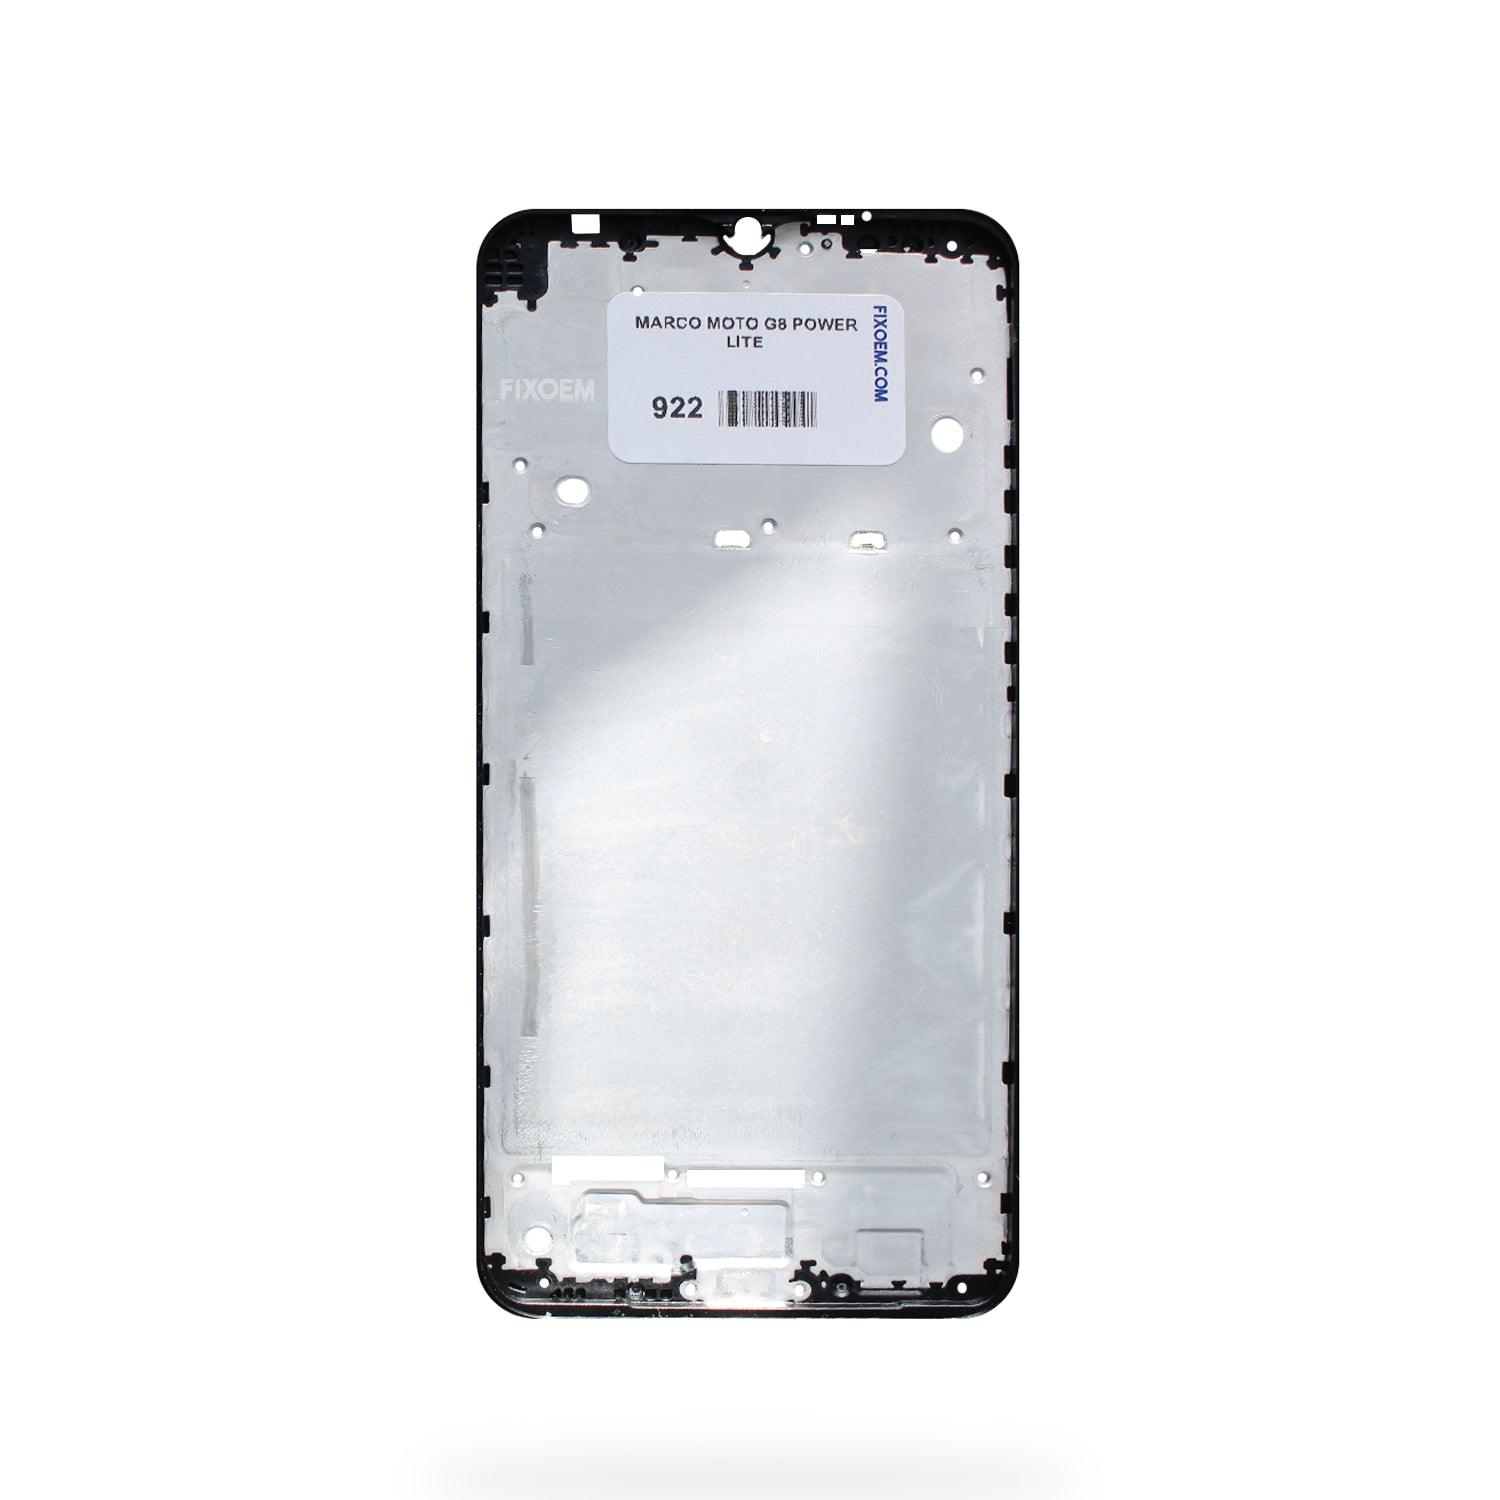 Marco Moto G8 Power Lite xt2055 a solo $ 70.00 Refaccion y puestos celulares, refurbish y microelectronica.- FixOEM